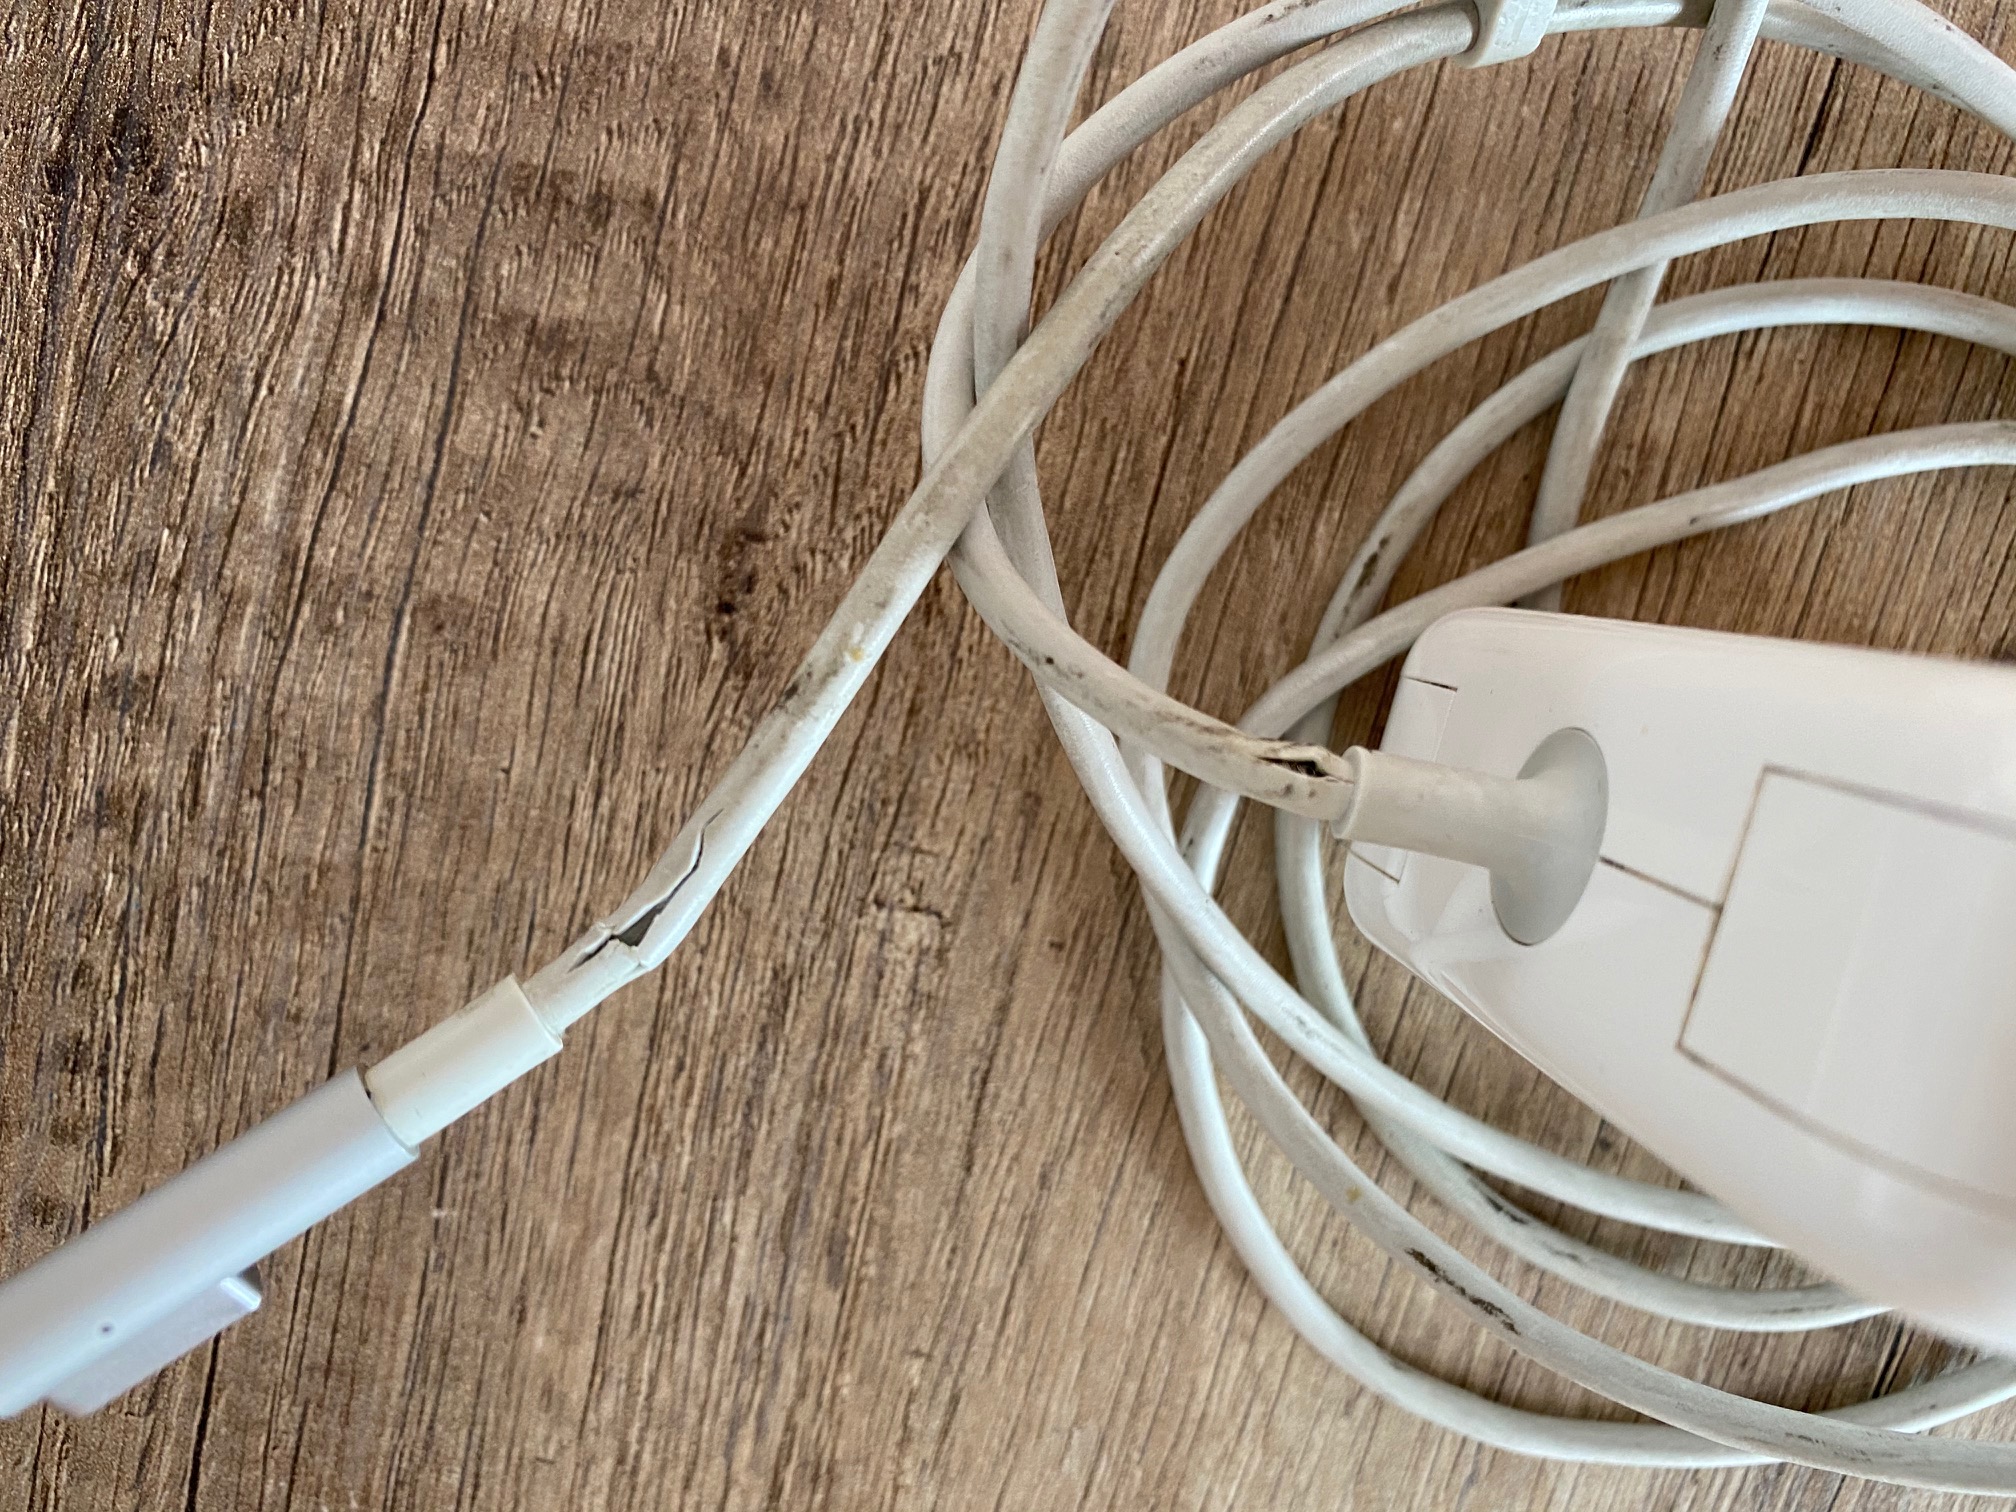 Broken Apple charger zoom